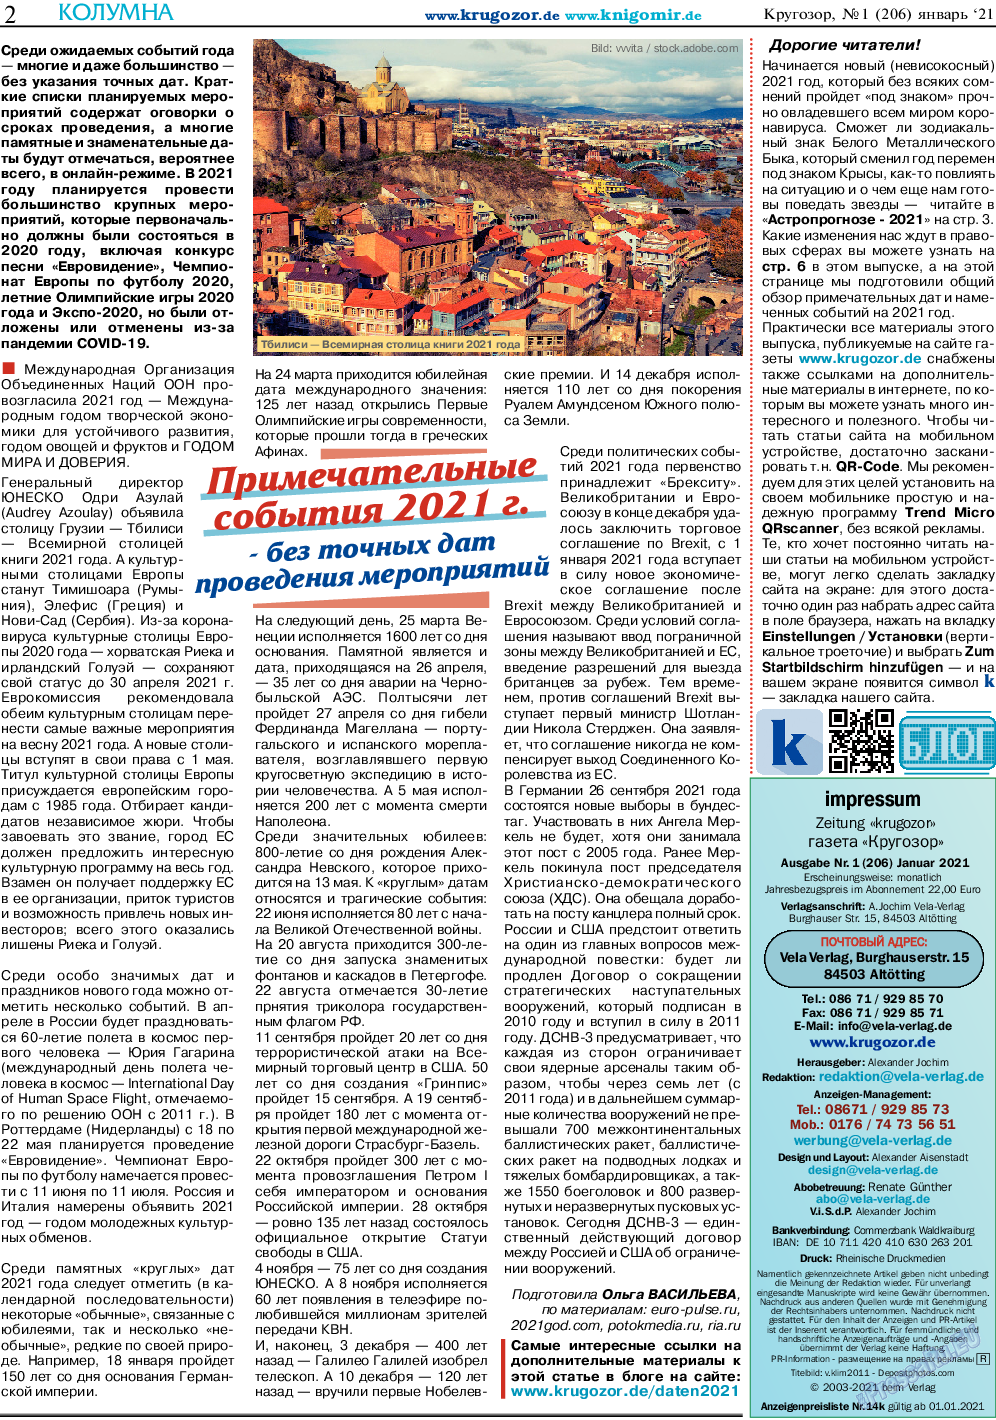 Кругозор, газета. 2021 №1 стр.2